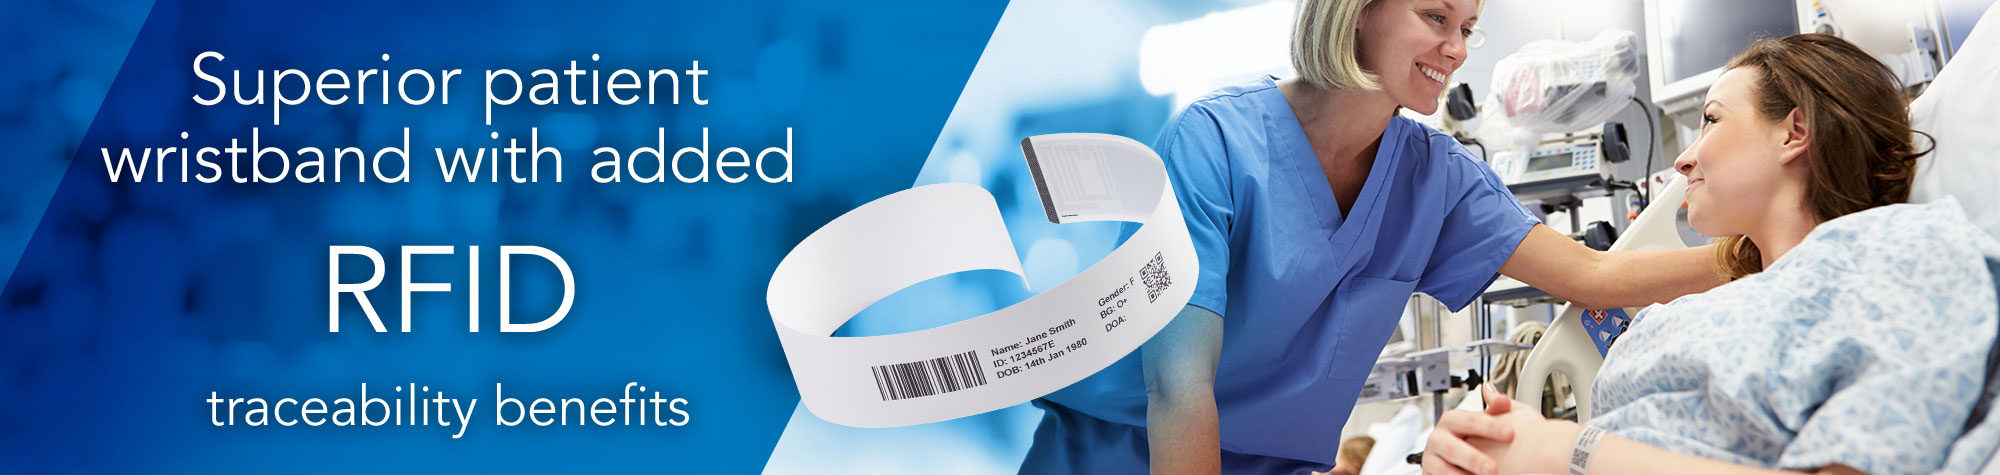 Un bracelet patient supérieur avec des avantages supplémentaires en matière de traçabilité RFID